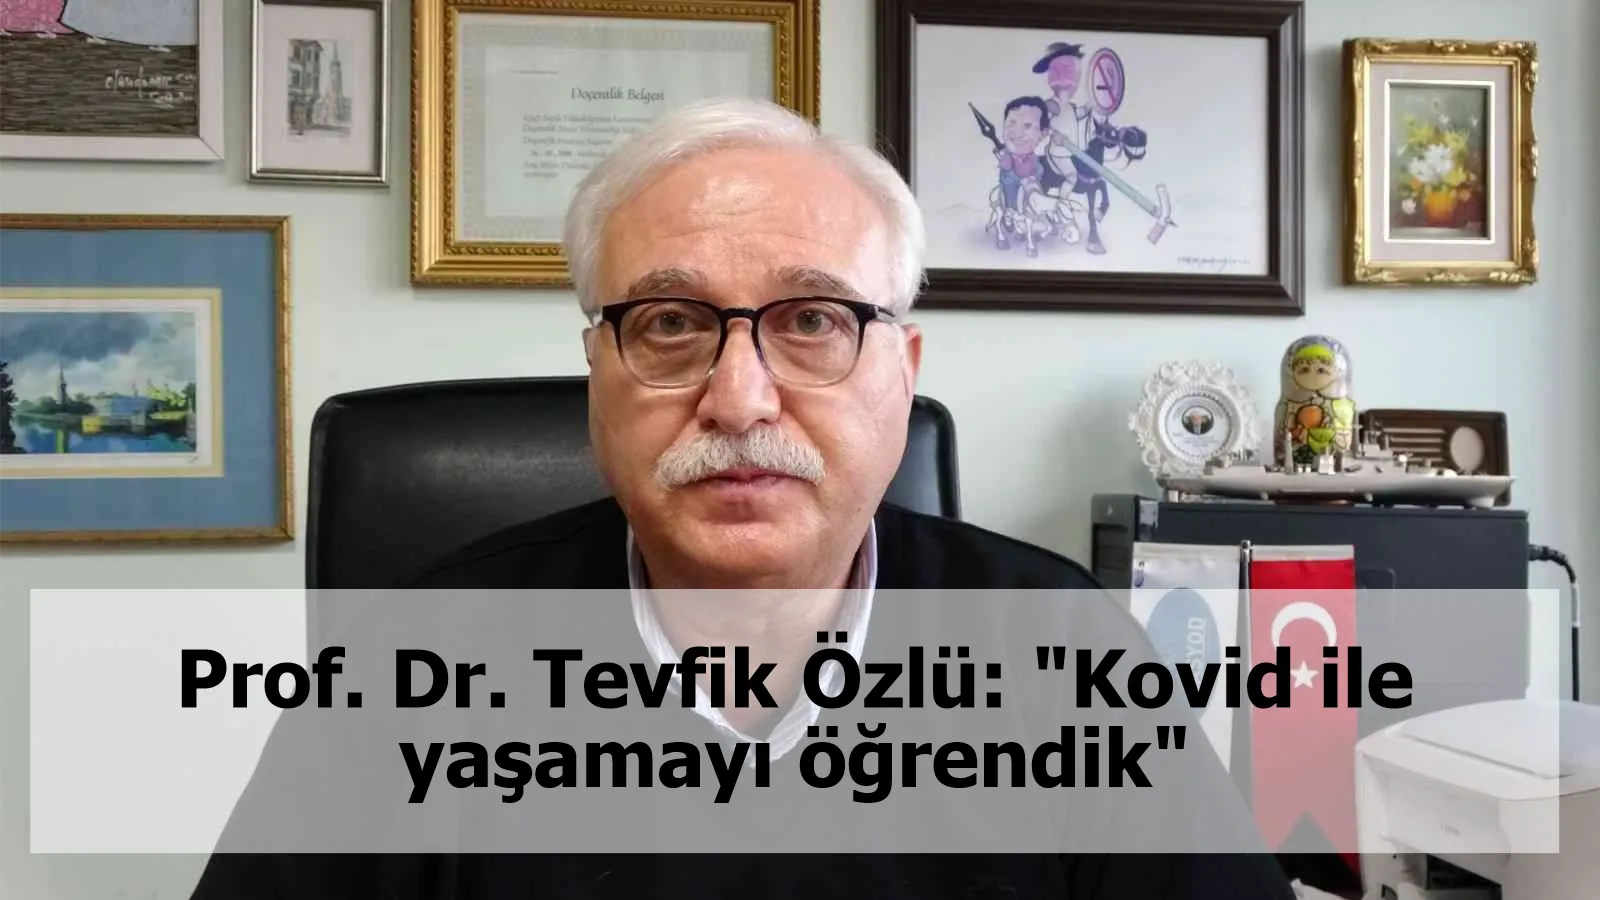 Prof. Dr. Tevfik Özlü: "Kovid ile yaşamayı öğrendik"